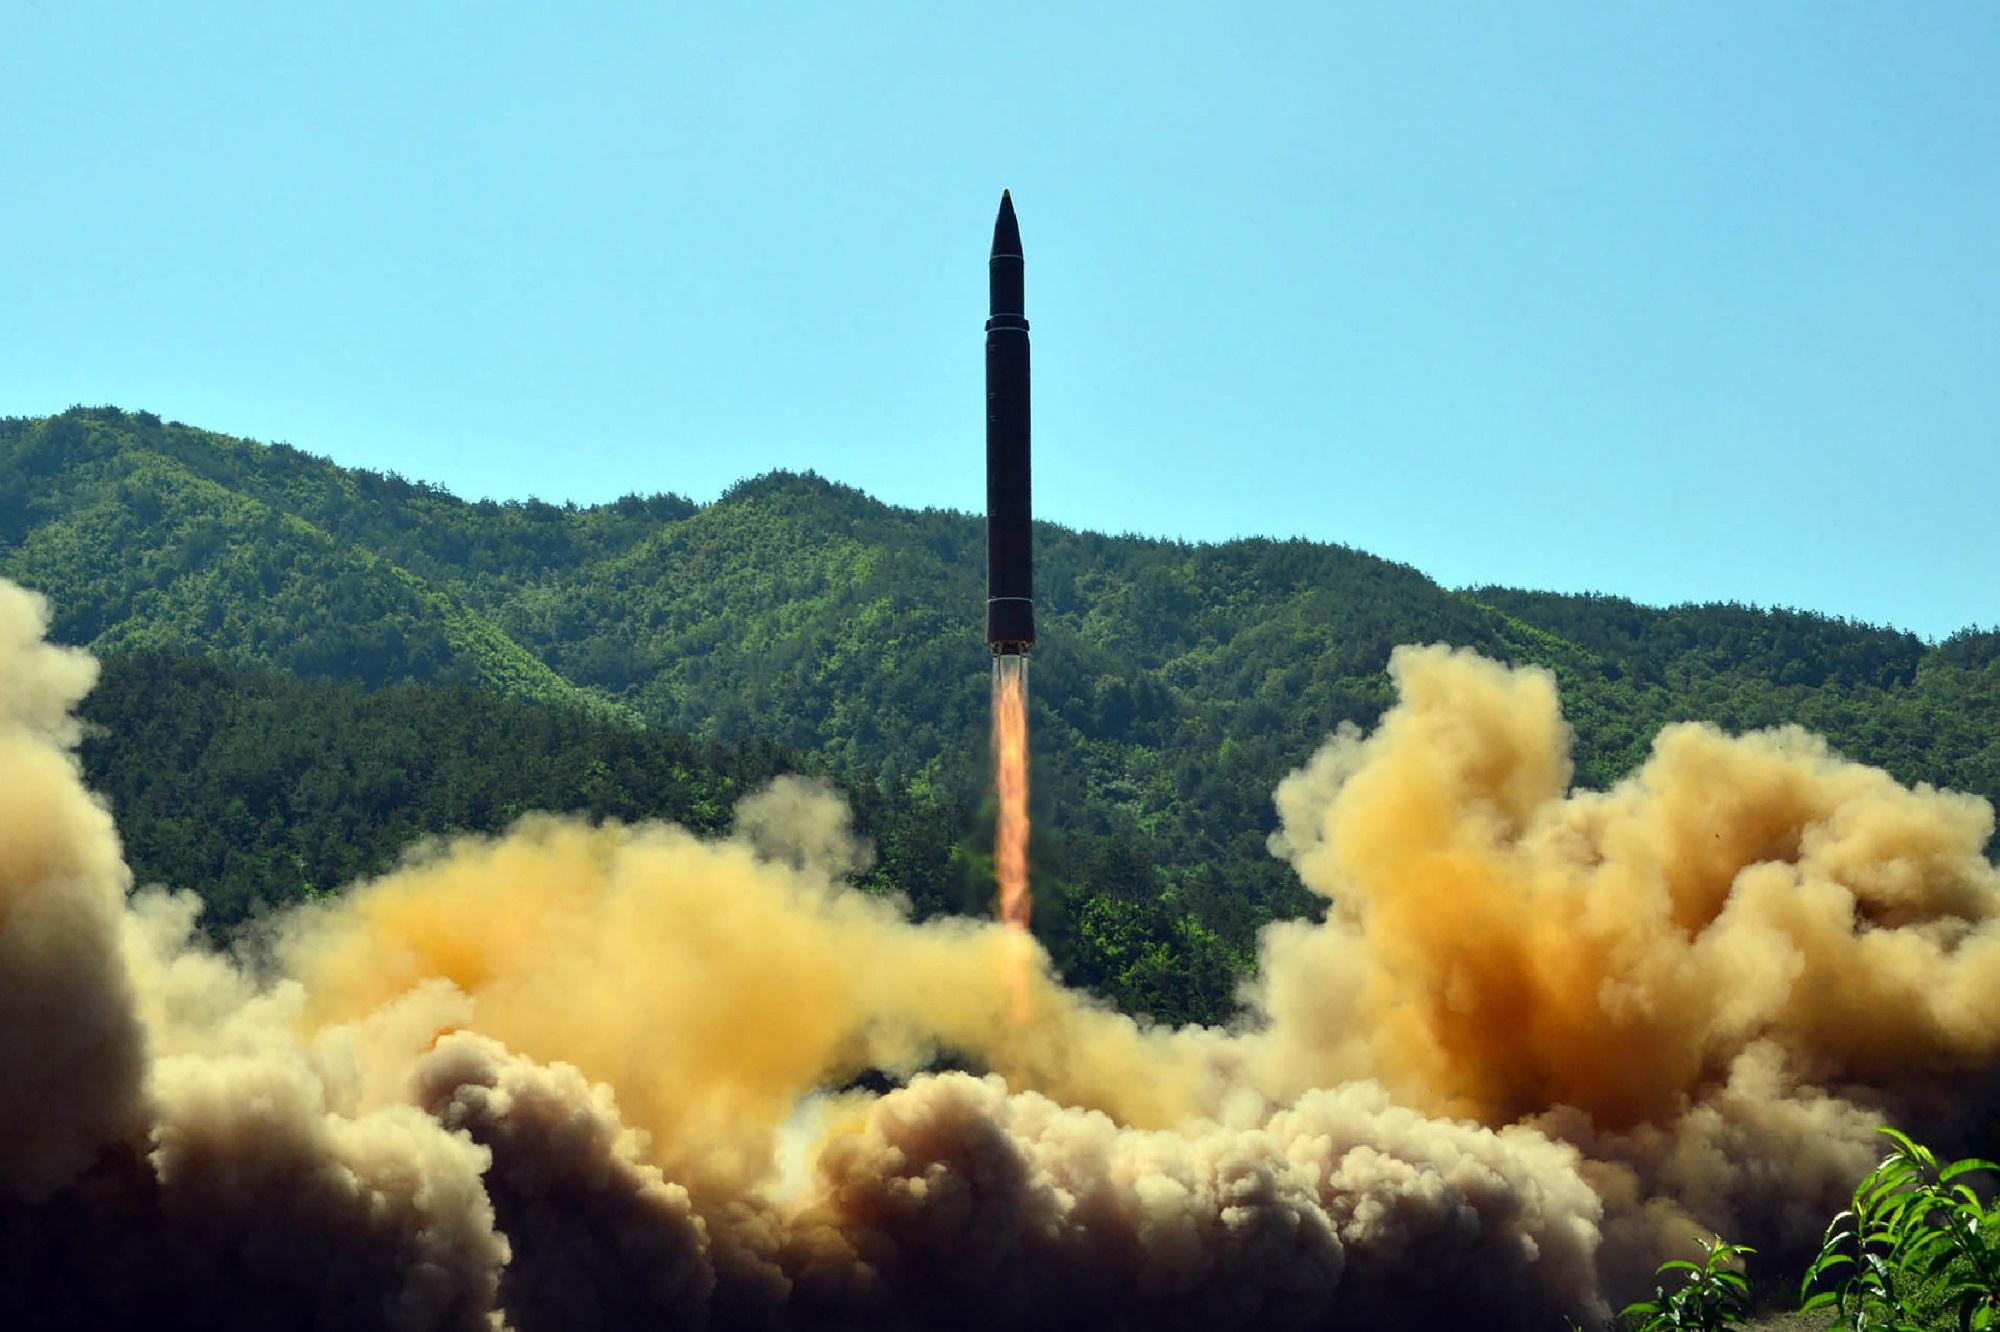 Imagen del lanzamiento del misil intercontinental realizado el 4 de julio por el régimen norcoreano, difundida un día después por la agencia de noticias oficial, la KCNA. Foto AFP.